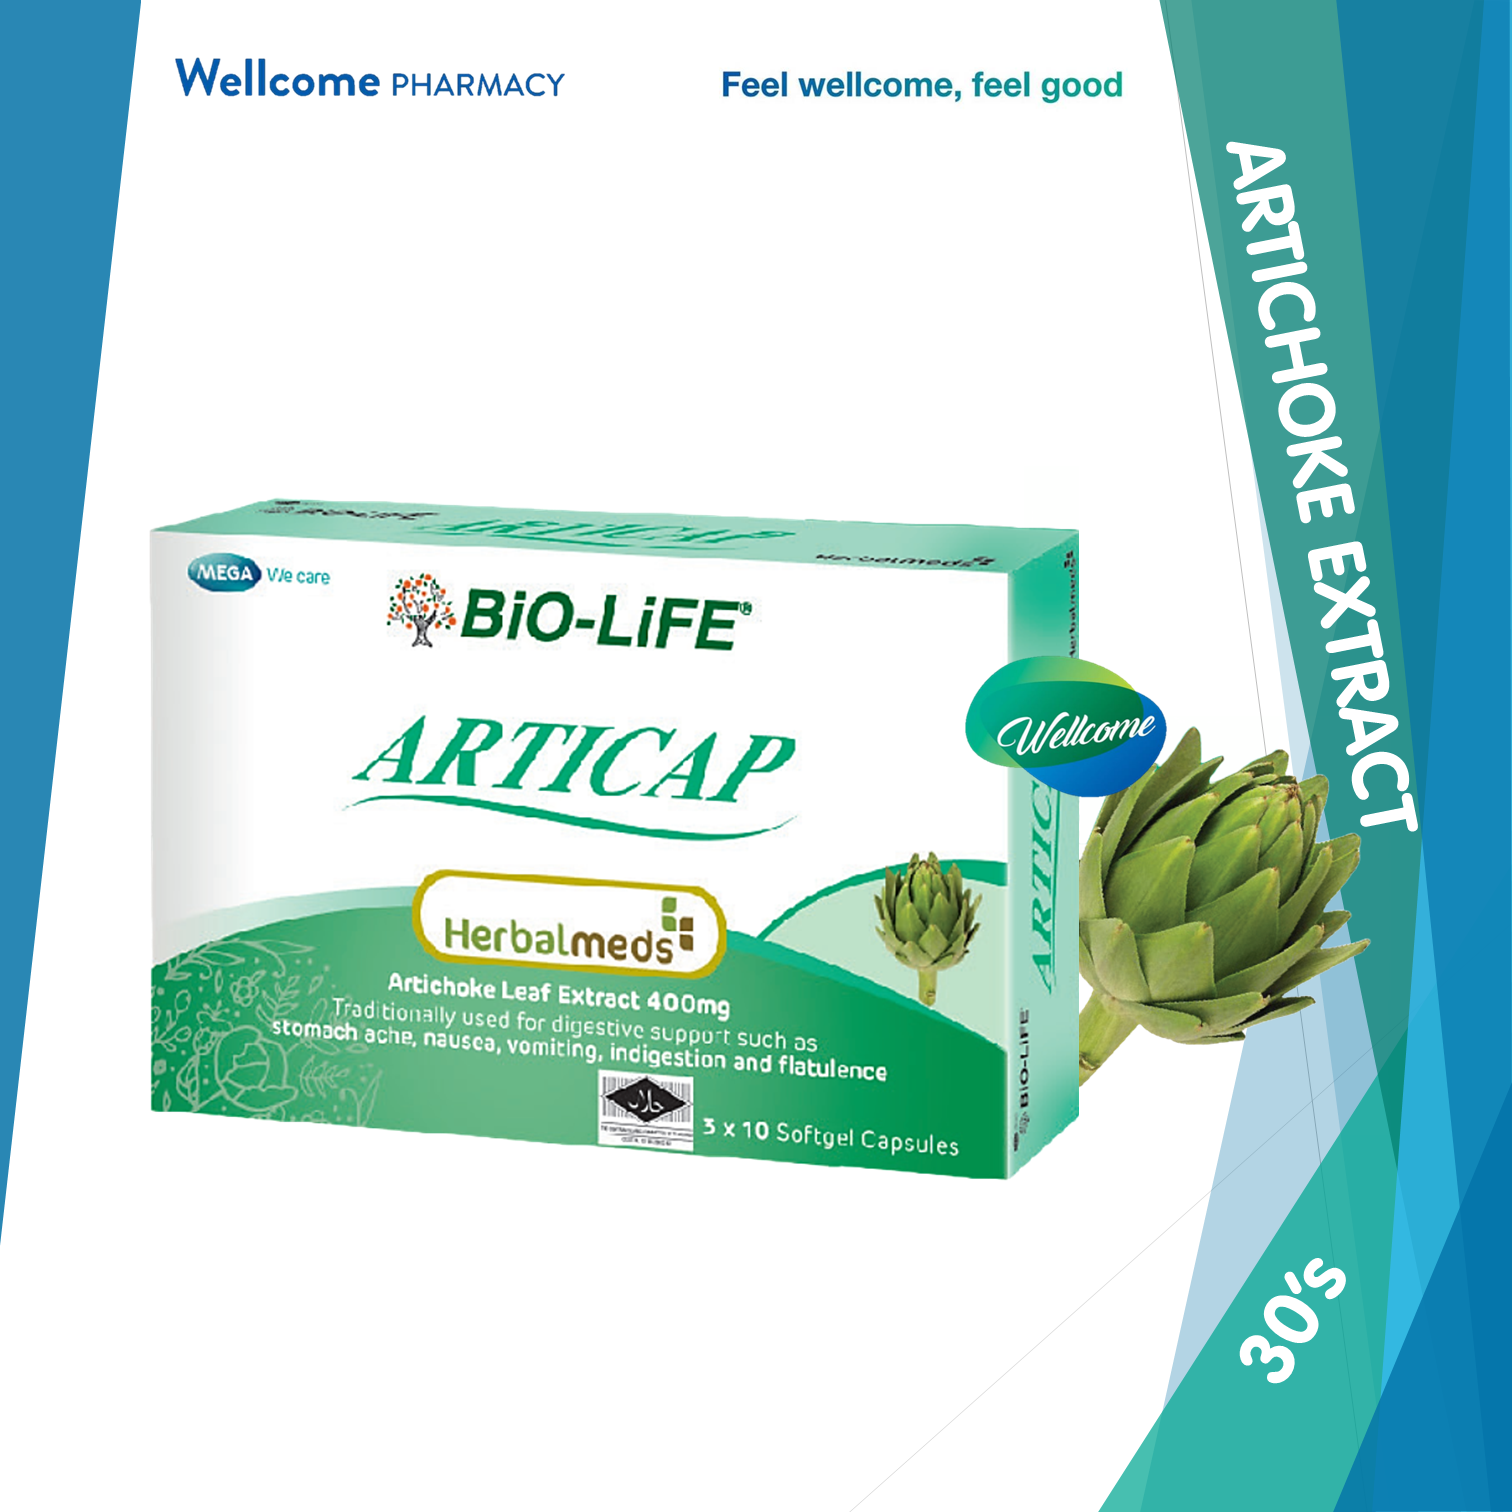 Bio-Life Articap Softgel Capsule - 30s.png